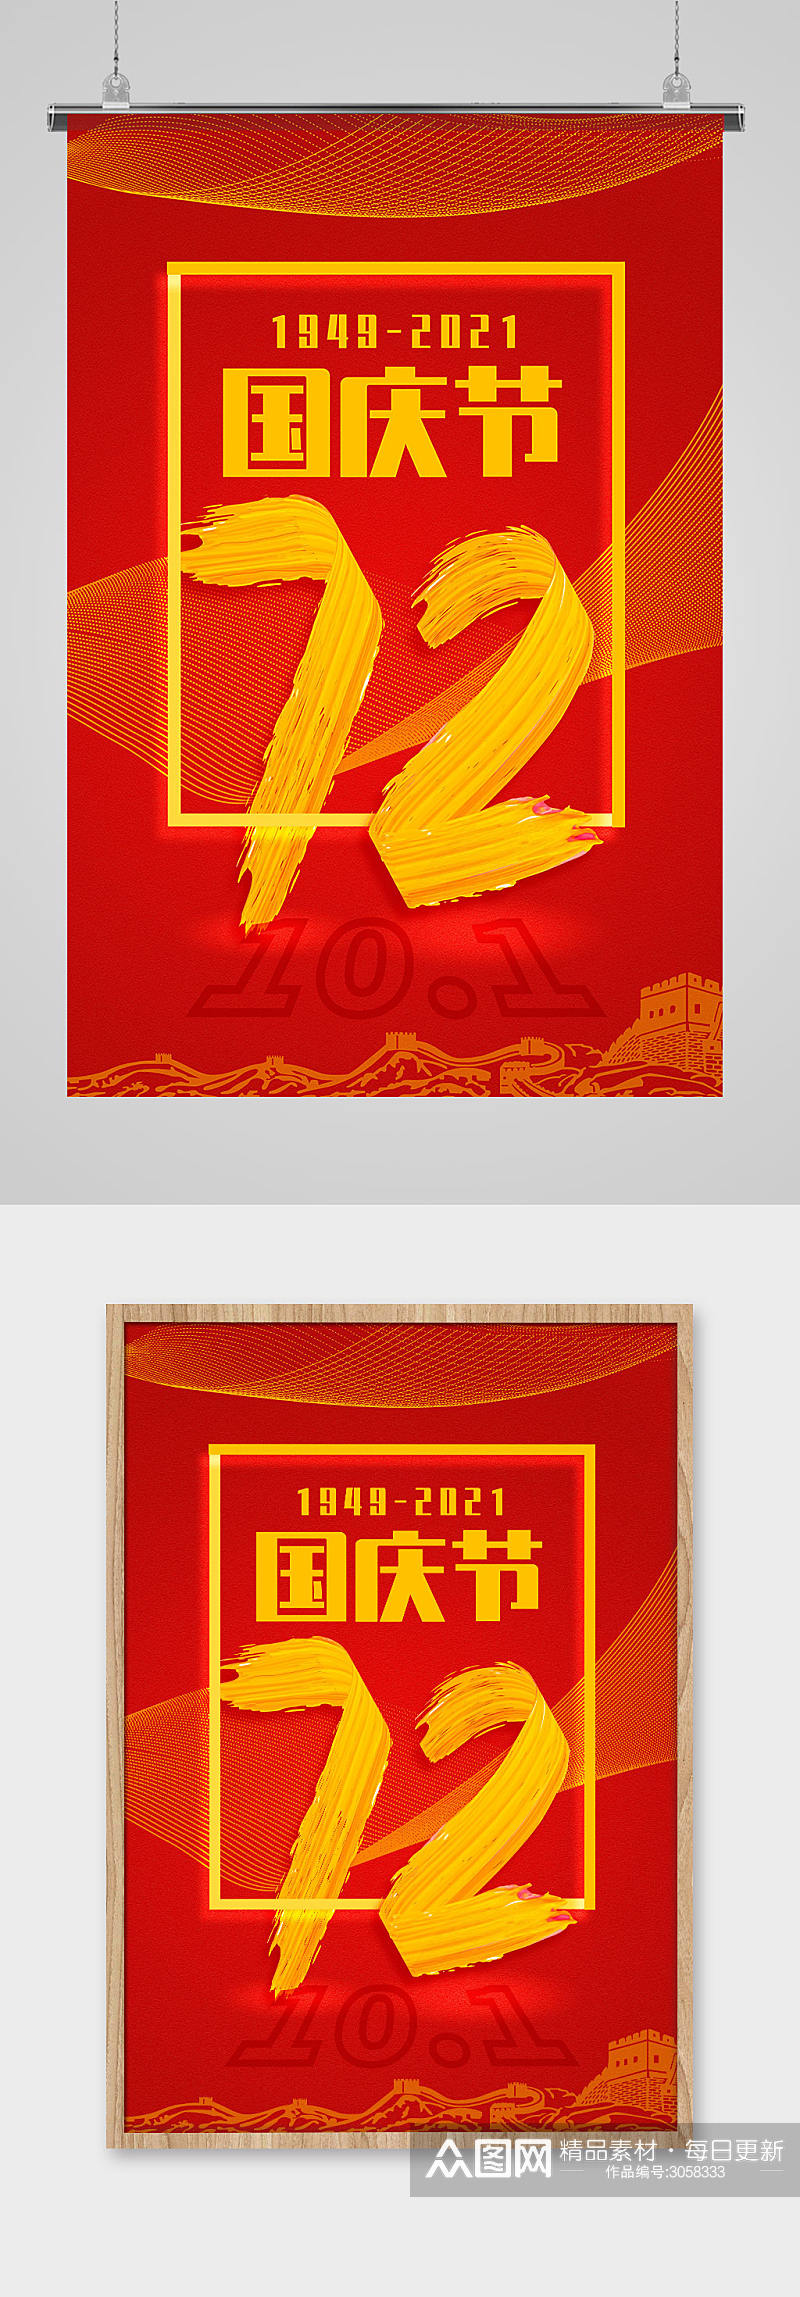 时尚油漆字体国庆72周年海报素材